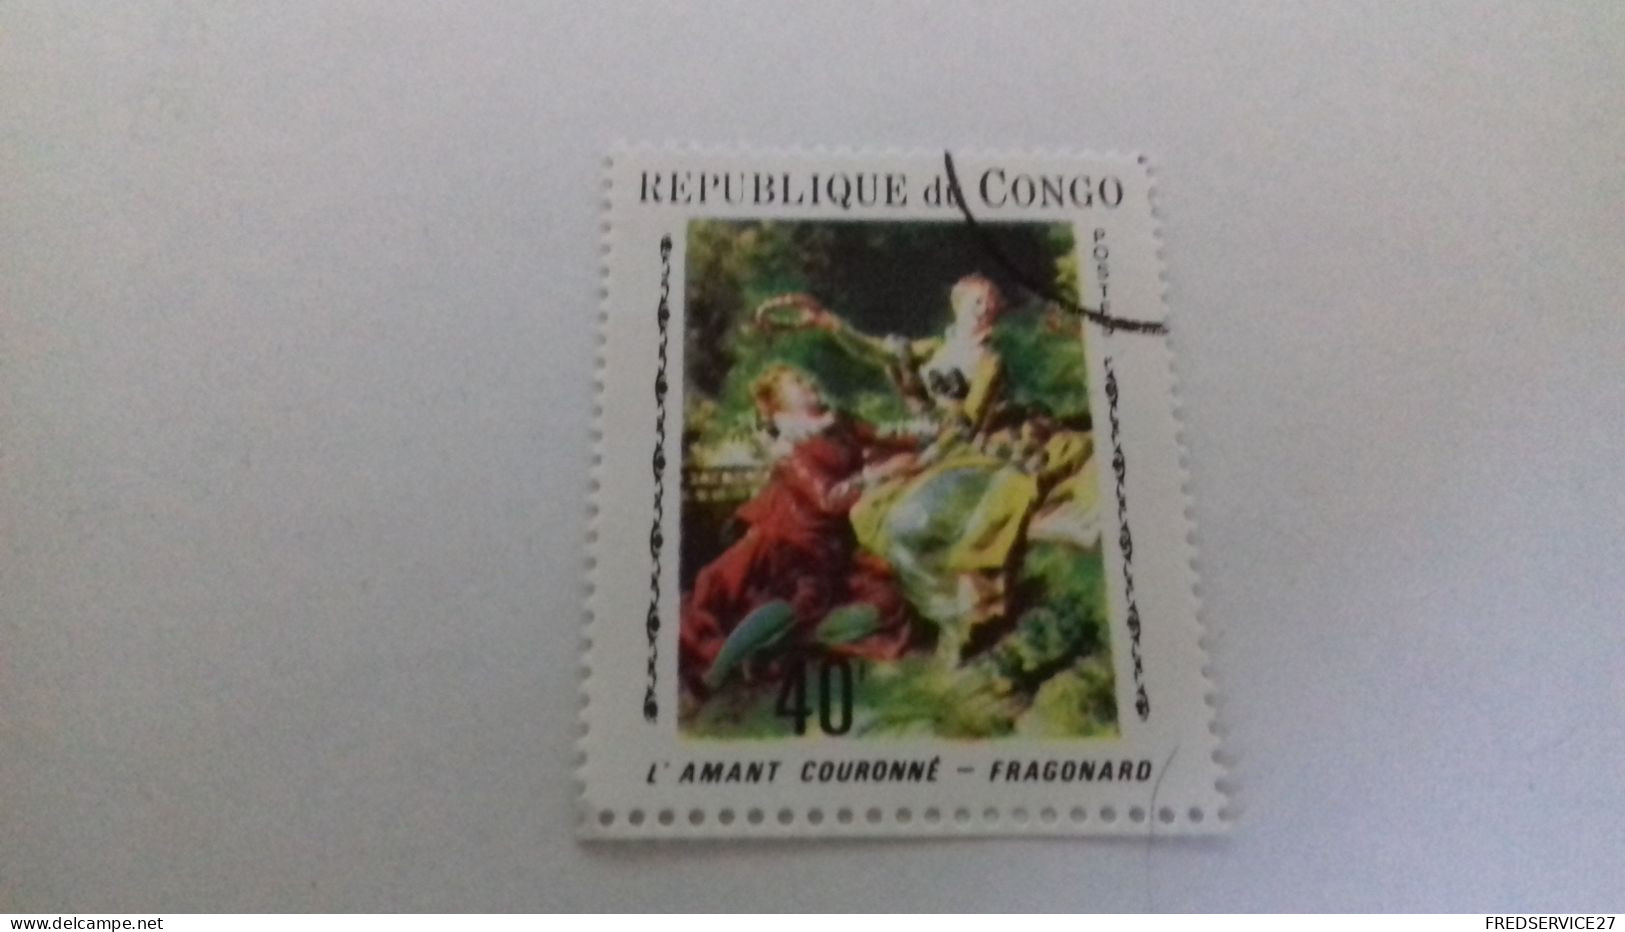 LR / TIMBRE REPUBLIQUE DU CONGO L AMANT COURONNE FRAGONARD - Used